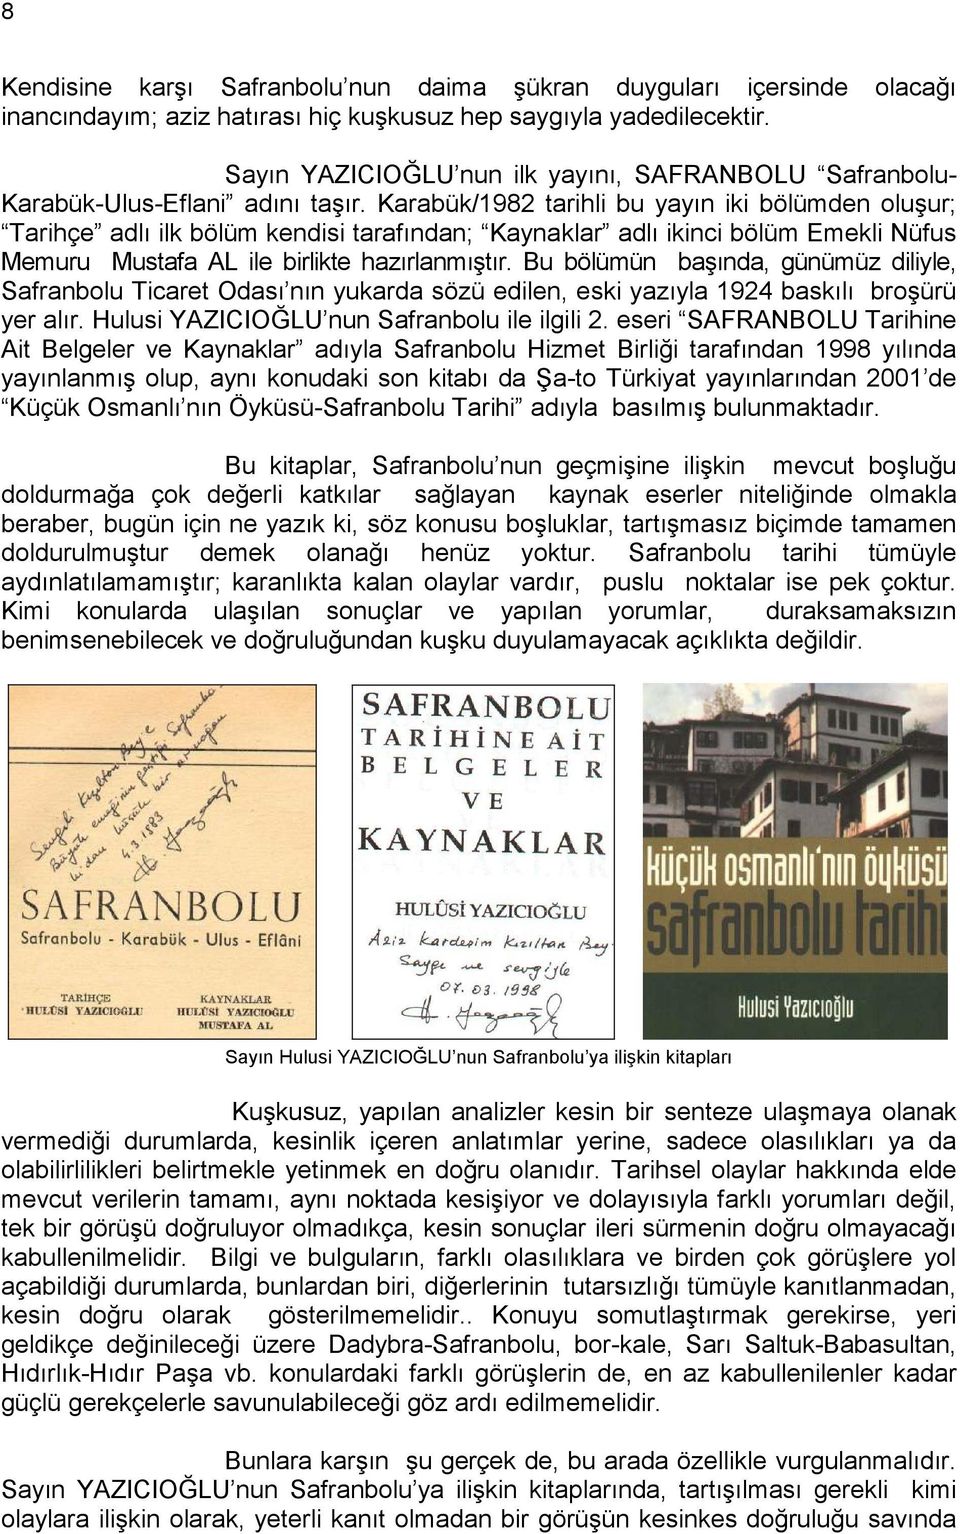 Karabük/1982 tarihli bu yayın iki bölümden oluşur; Tarihçe adlı ilk bölüm kendisi tarafından; Kaynaklar adlı ikinci bölüm Emekli Nüfus Memuru Mustafa AL ile birlikte hazırlanmıştır.